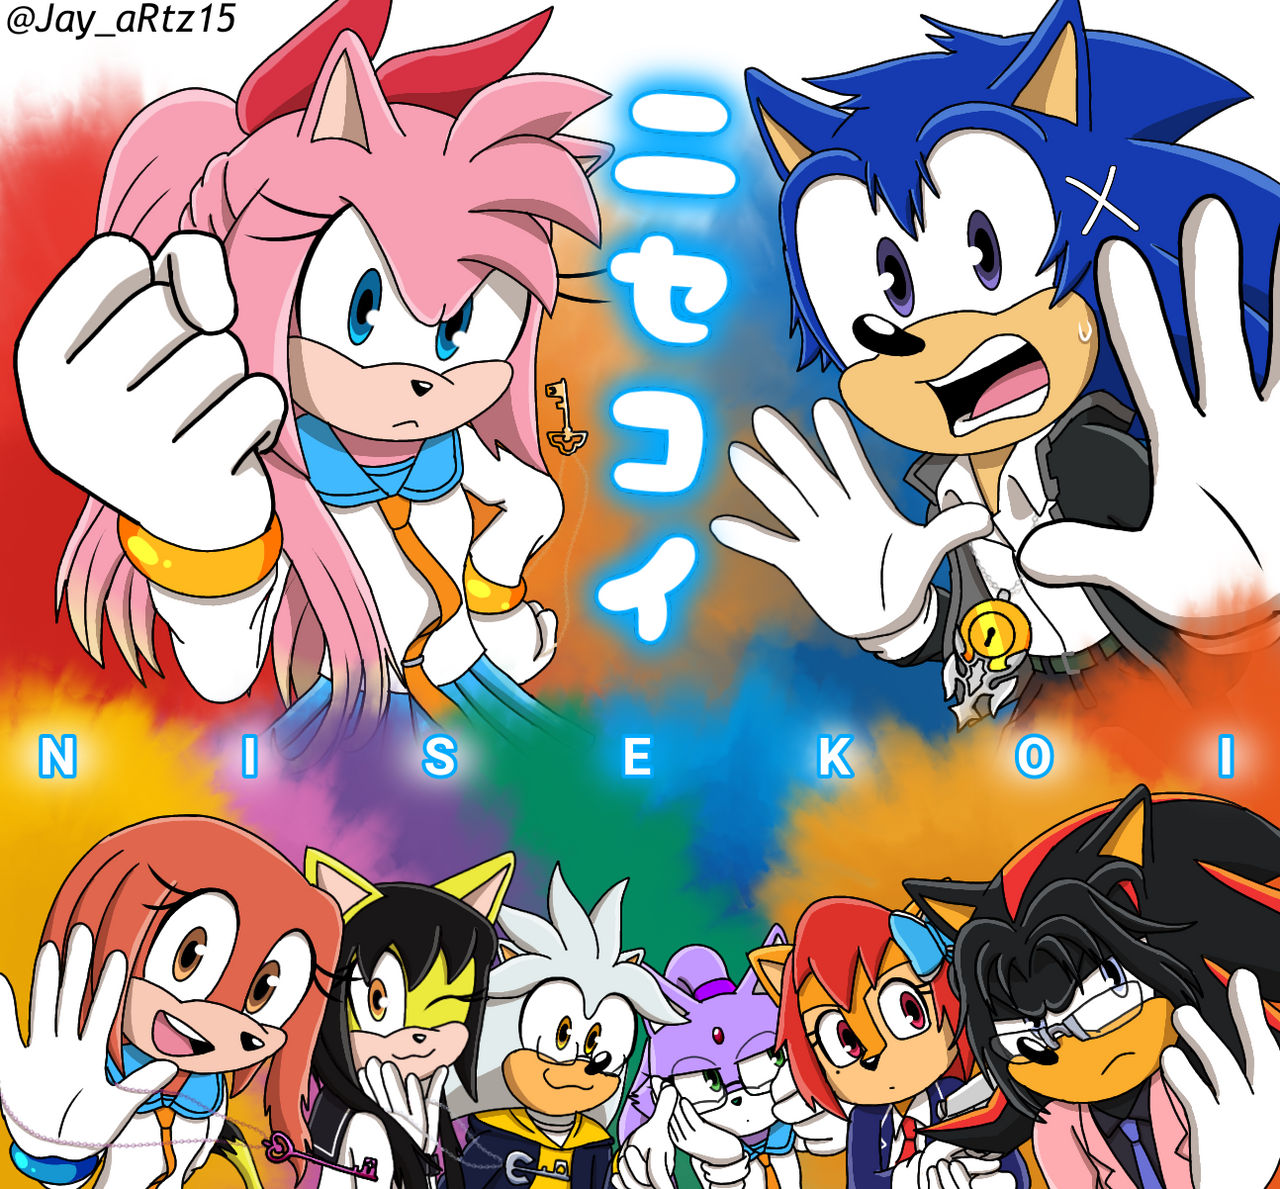 Sonic/Nisekoi Crossover Art by Jame5rheneaZ on DeviantArt